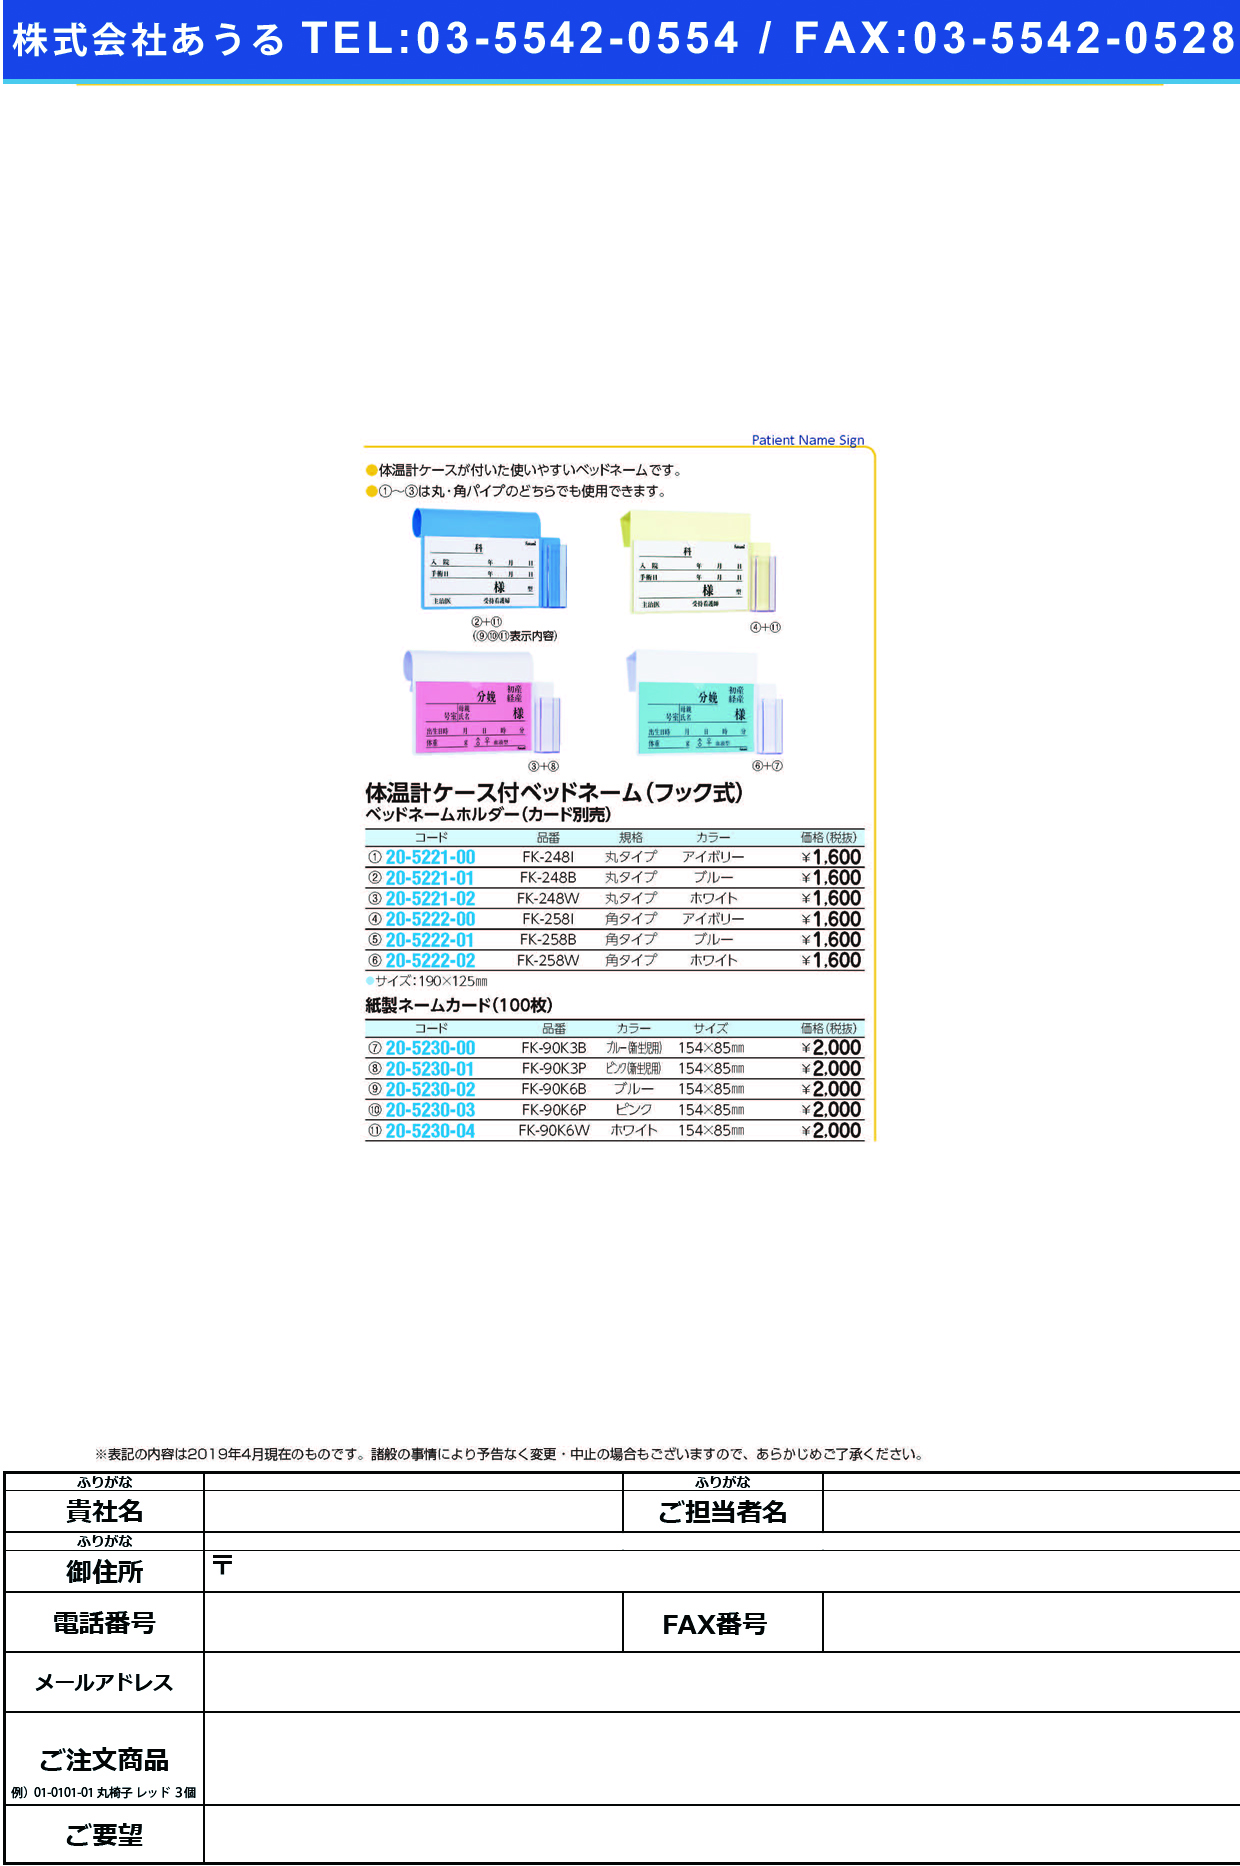 (20-5222-01)ベッドネームホルダー（体温計ケース付 FK-258B(ﾌｯｸｼｷ) ﾍﾞｯﾄﾞﾈｰﾑﾎﾙﾀﾞｰ【1枚単位】【2019年カタログ商品】